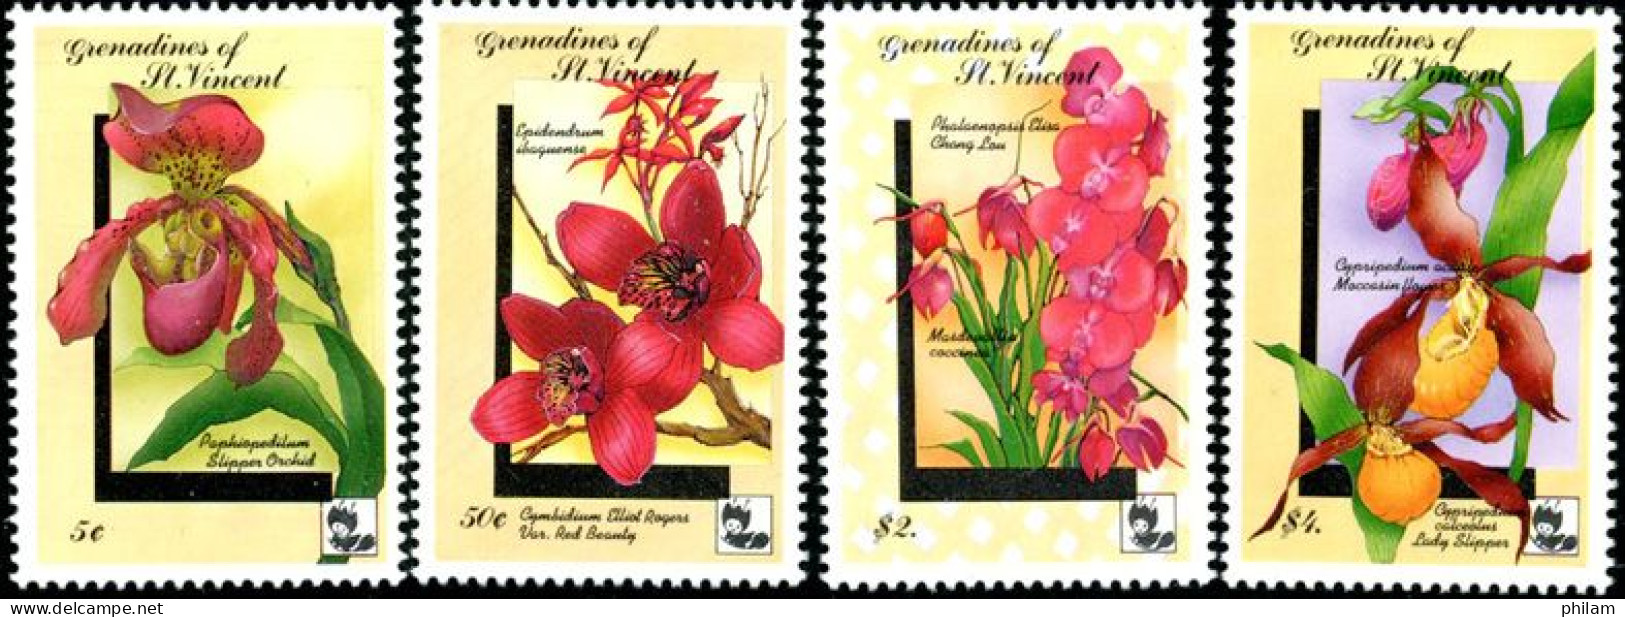 ST VINCENT GRENADINES 1992 - Orchidées II - (Phalaenopsis Cym) - 4 V. - Orchids